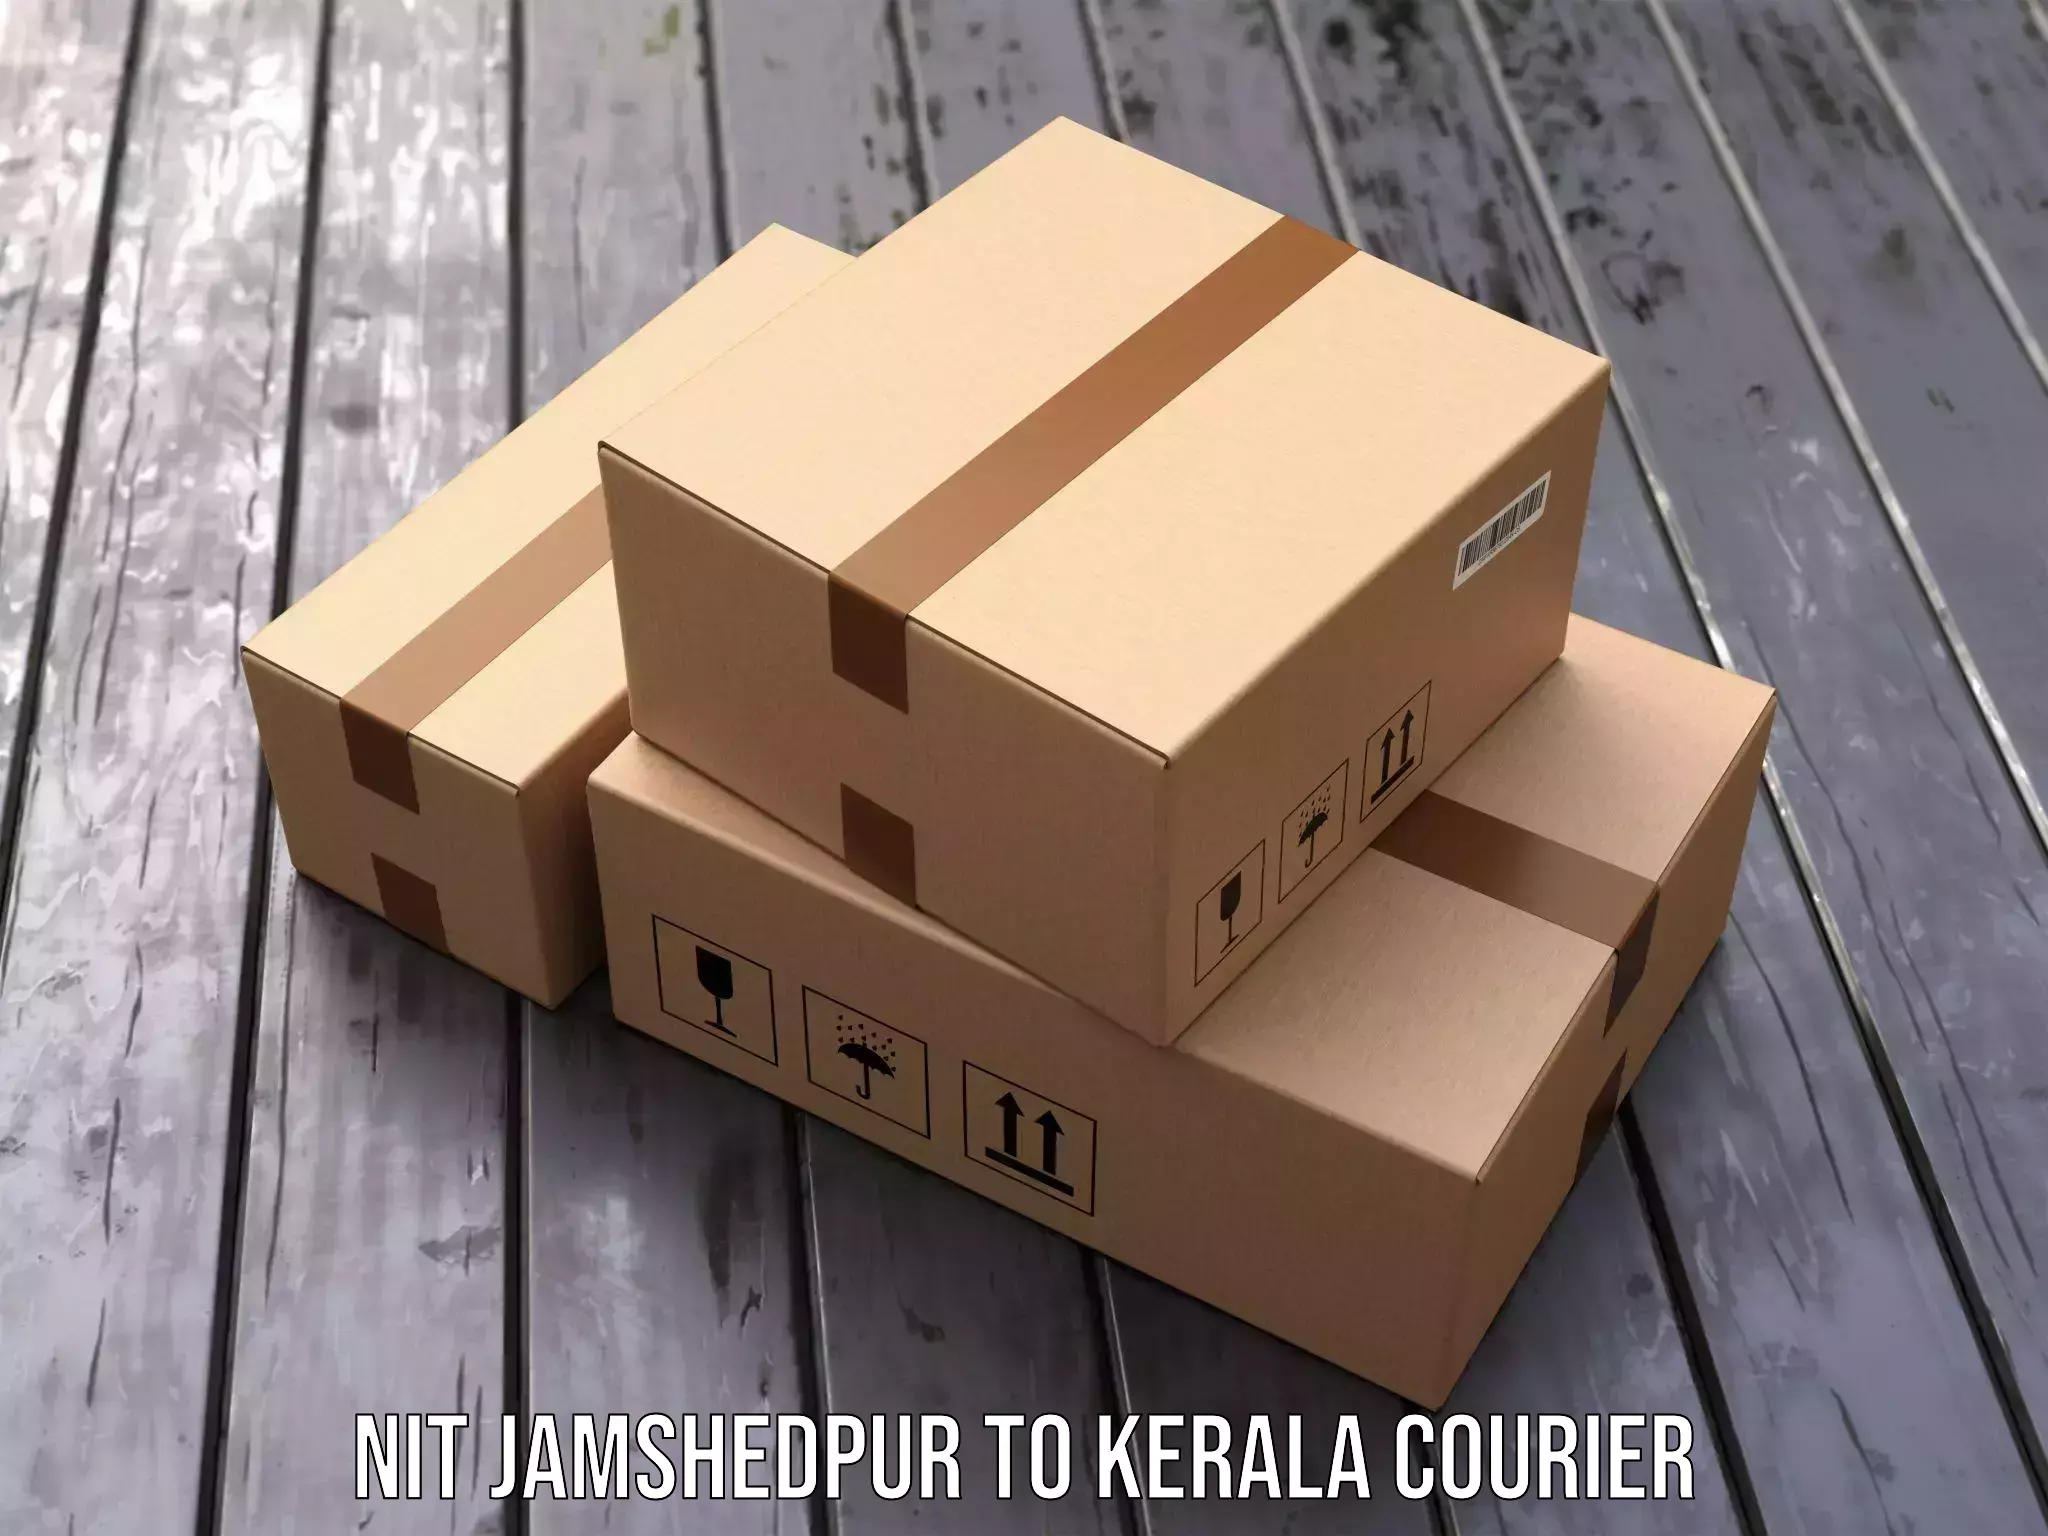 International courier networks NIT Jamshedpur to Nileshwar